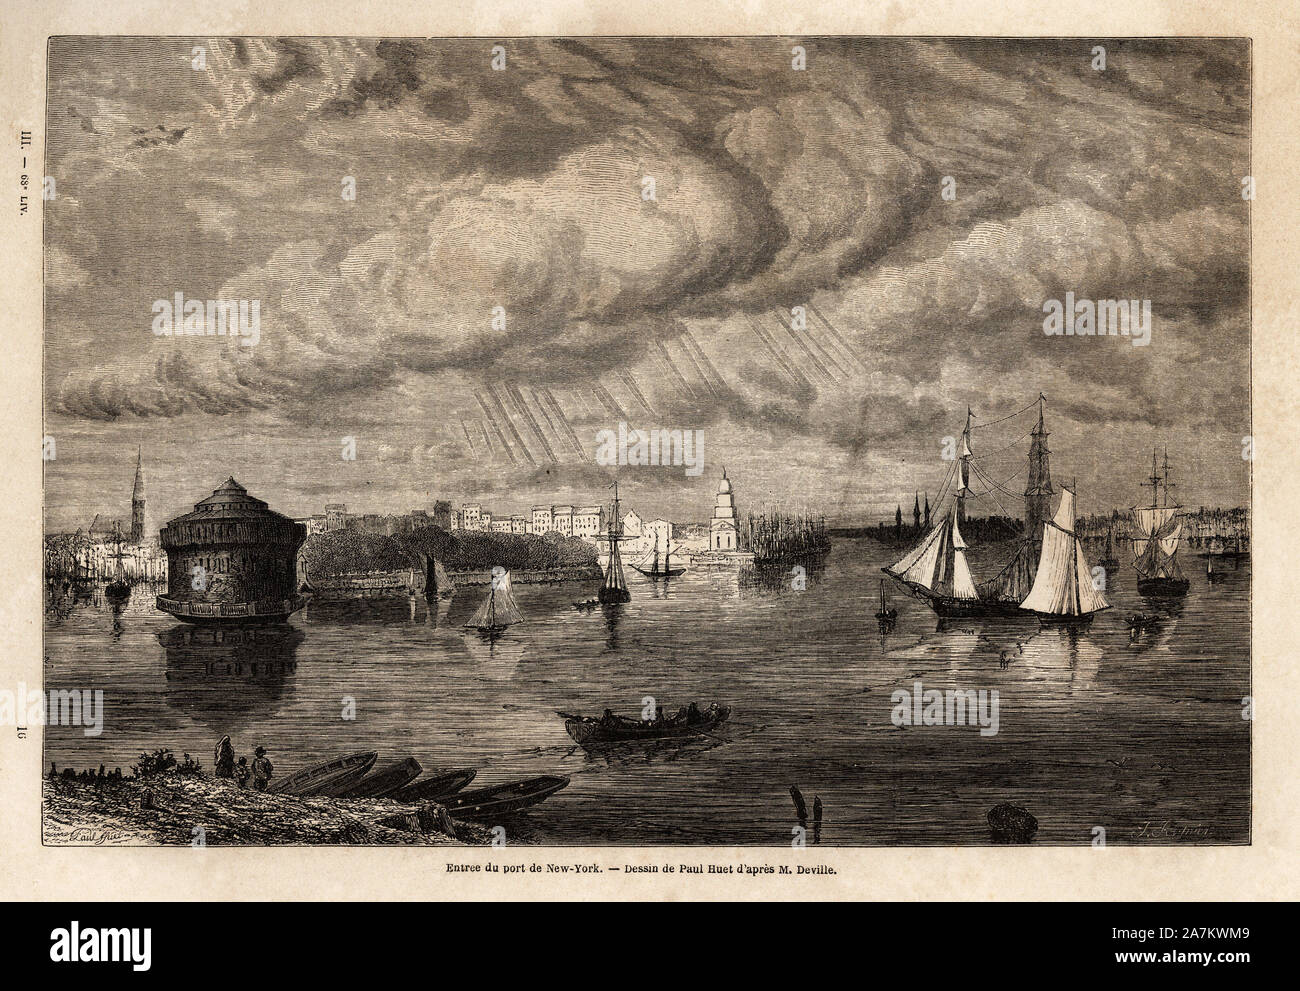 L'entree du port de New York, dessin de Paul Huet (1803-1869), pour illustrer les voyages dans l'Amerique septentrionale en 1854-1855, de L. Deville. Stock Photo